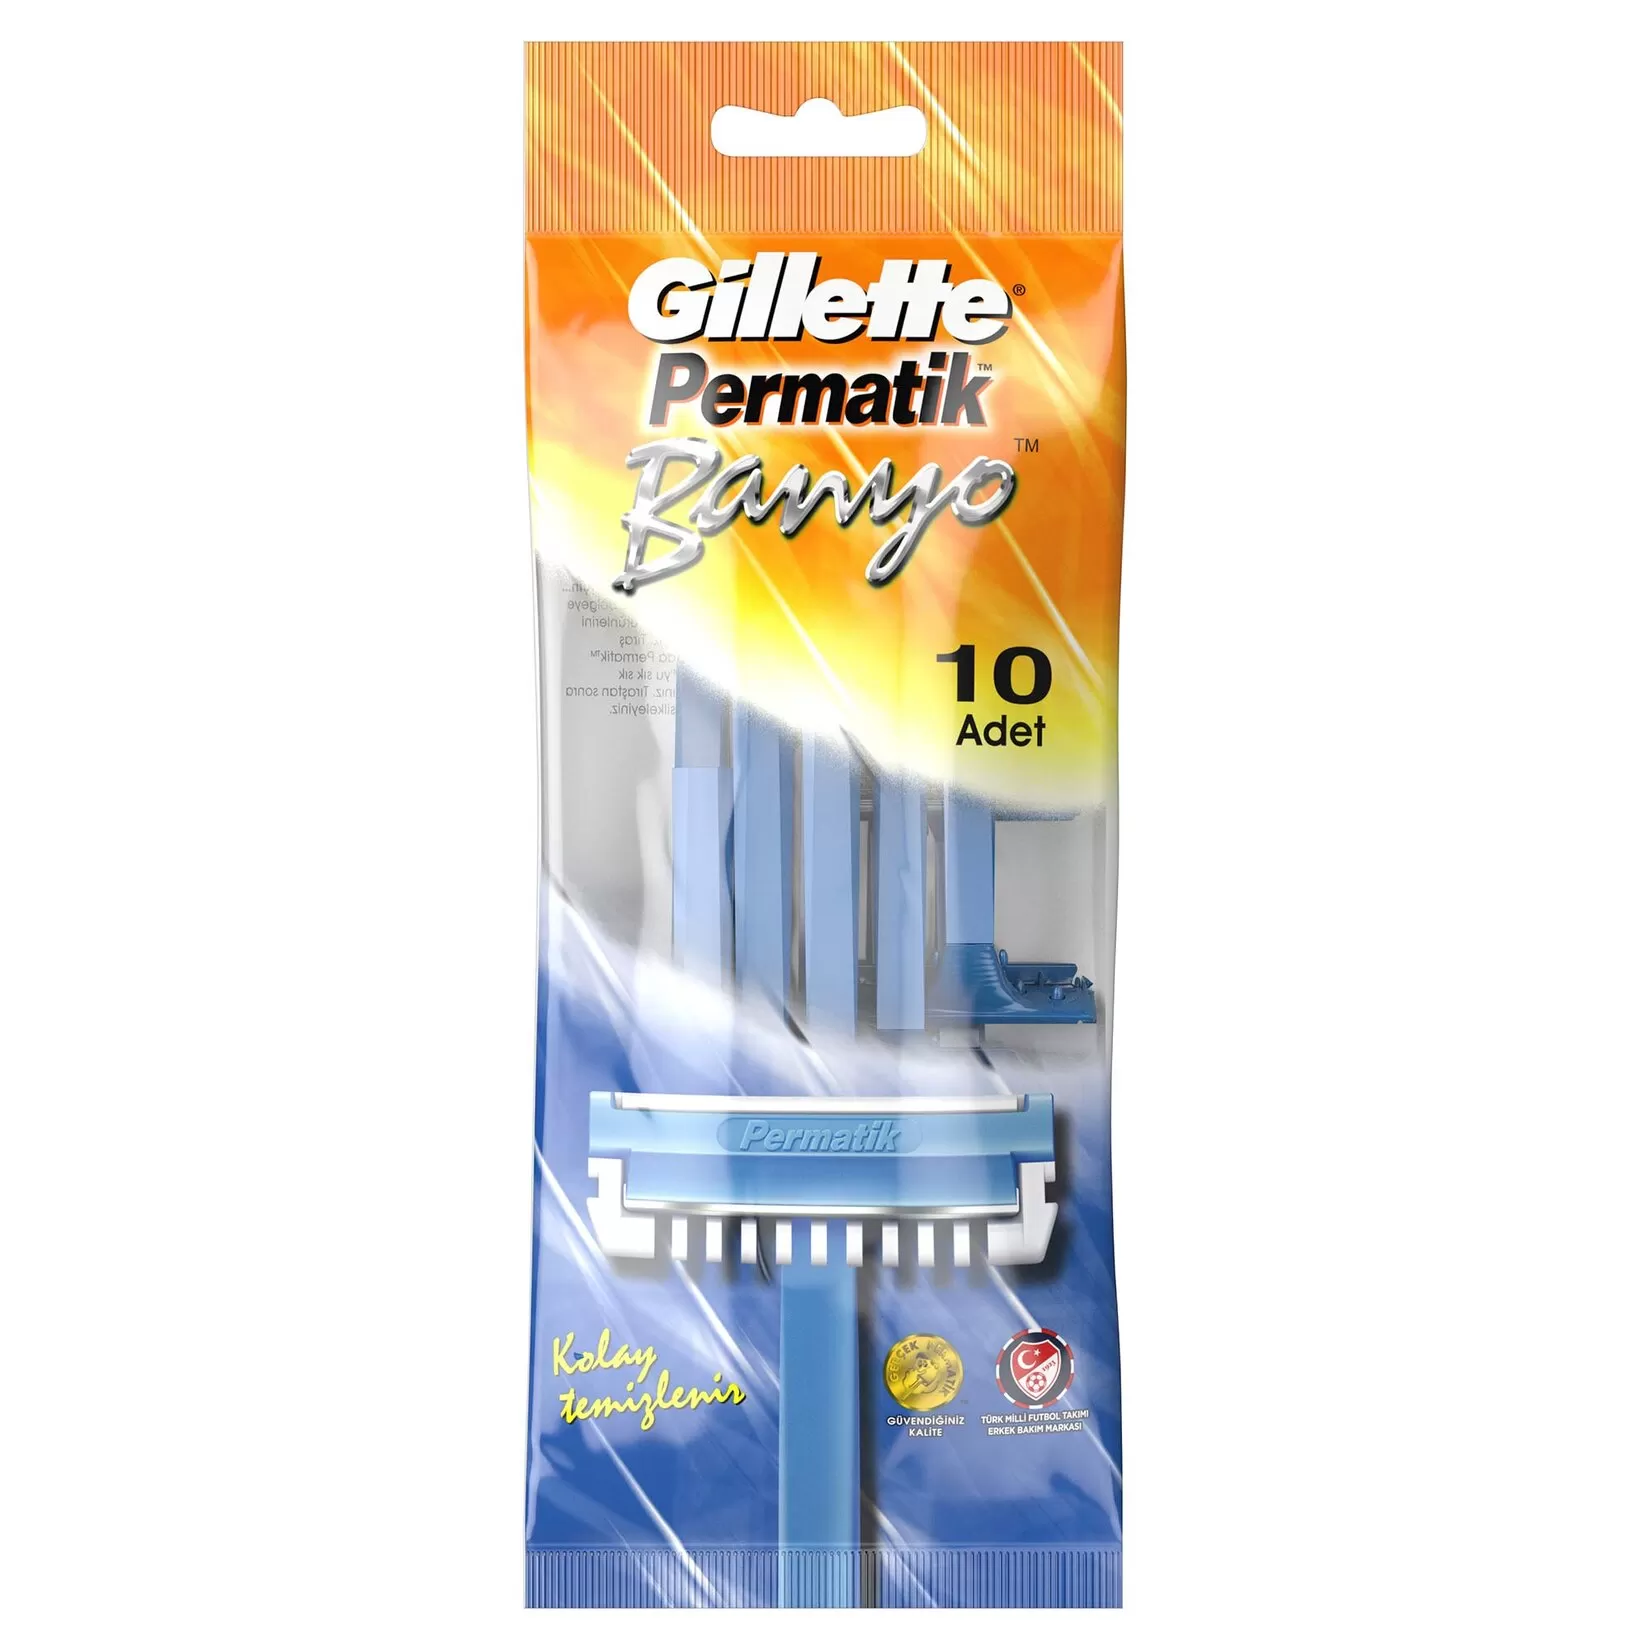 Gillette Permatik Banyo Kullan At Tıraş Bıçağı 10 Adet